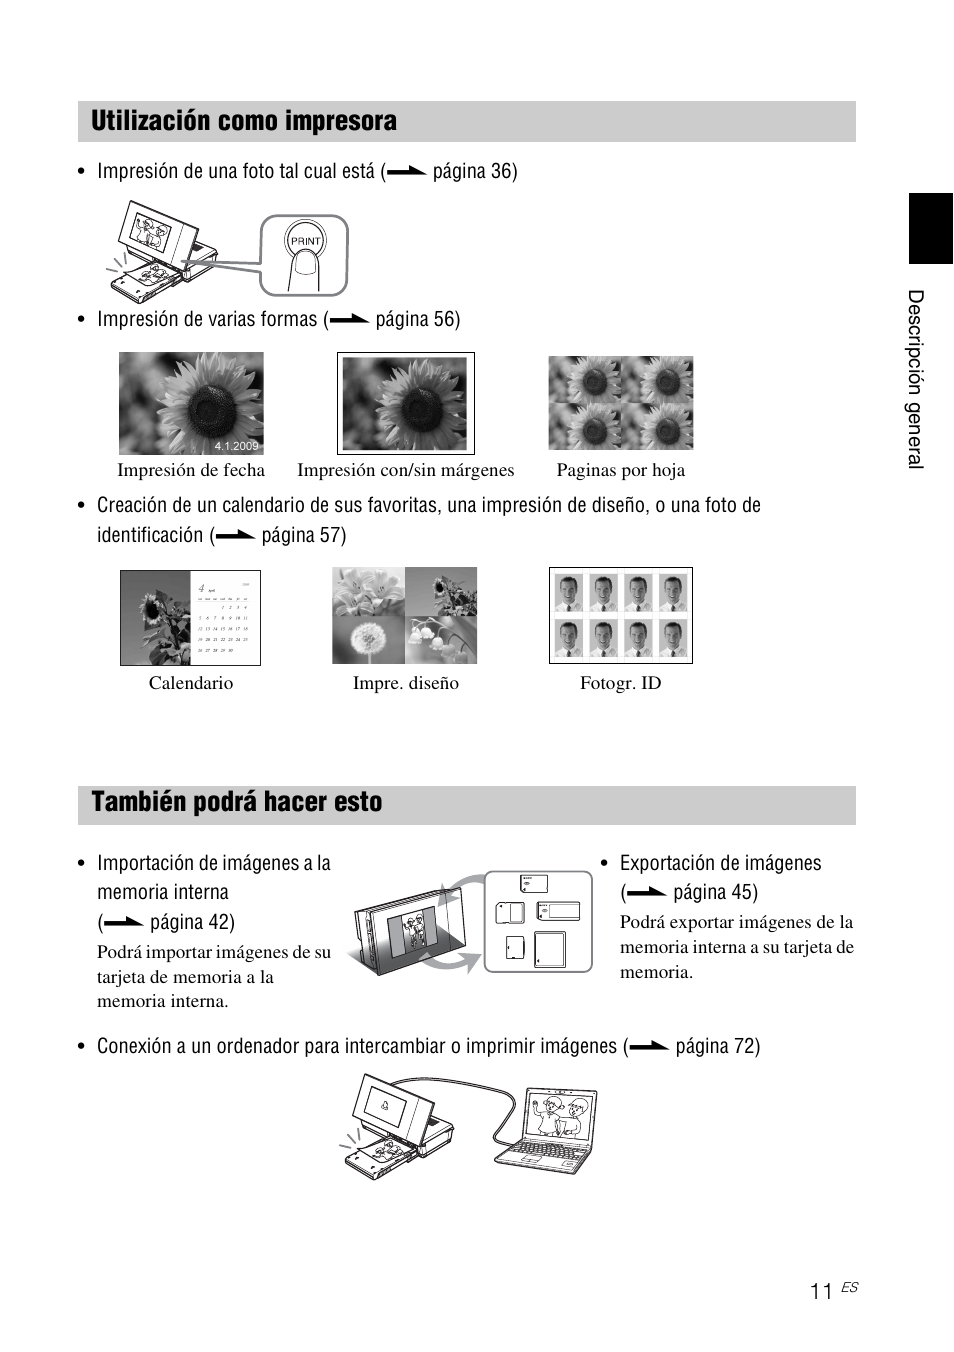 Utilización como impresora, También podrá hacer esto | Sony DPP-F700 Manual del usuario | Página 11 / 115